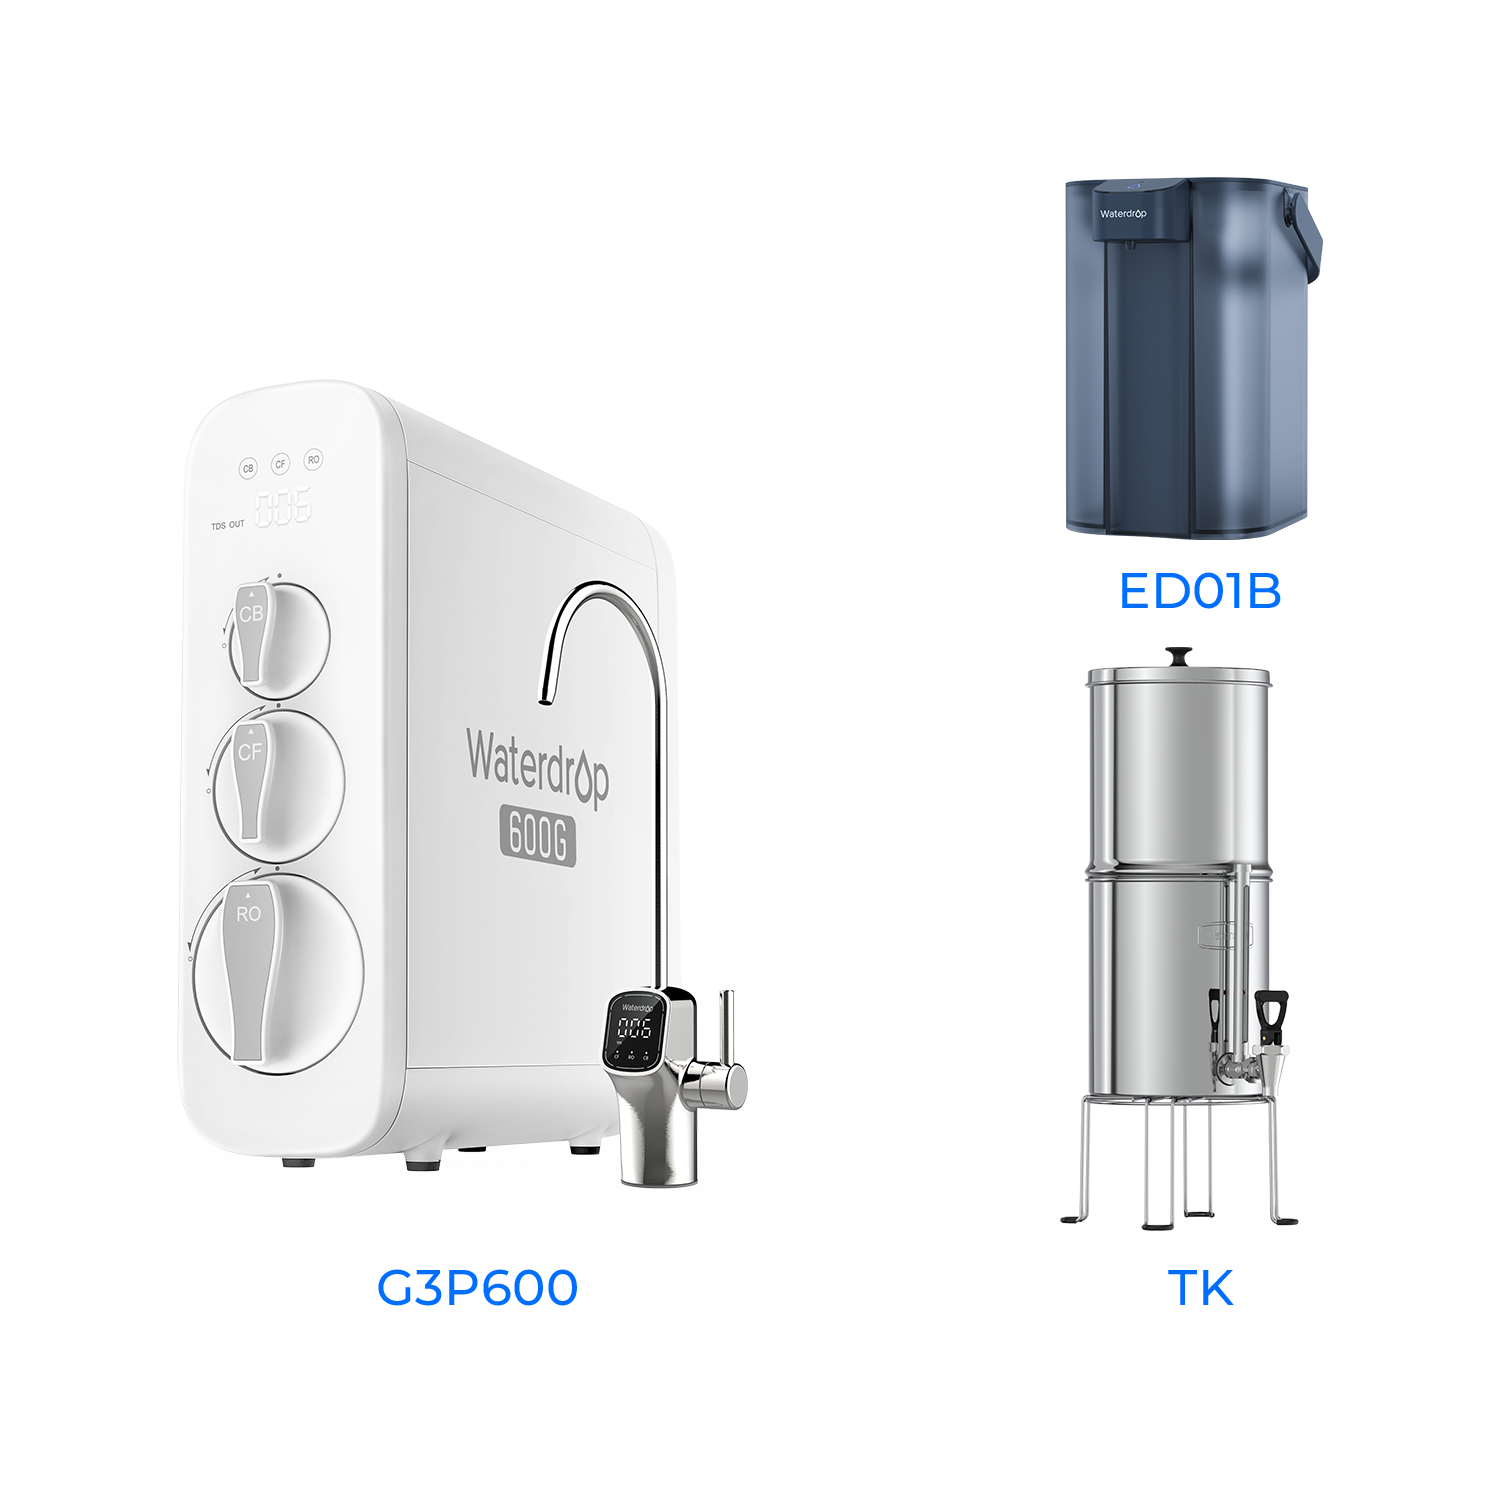 G3P600 Tankless Reverse Osmosis System - Waterdrop G3P600 Bundles